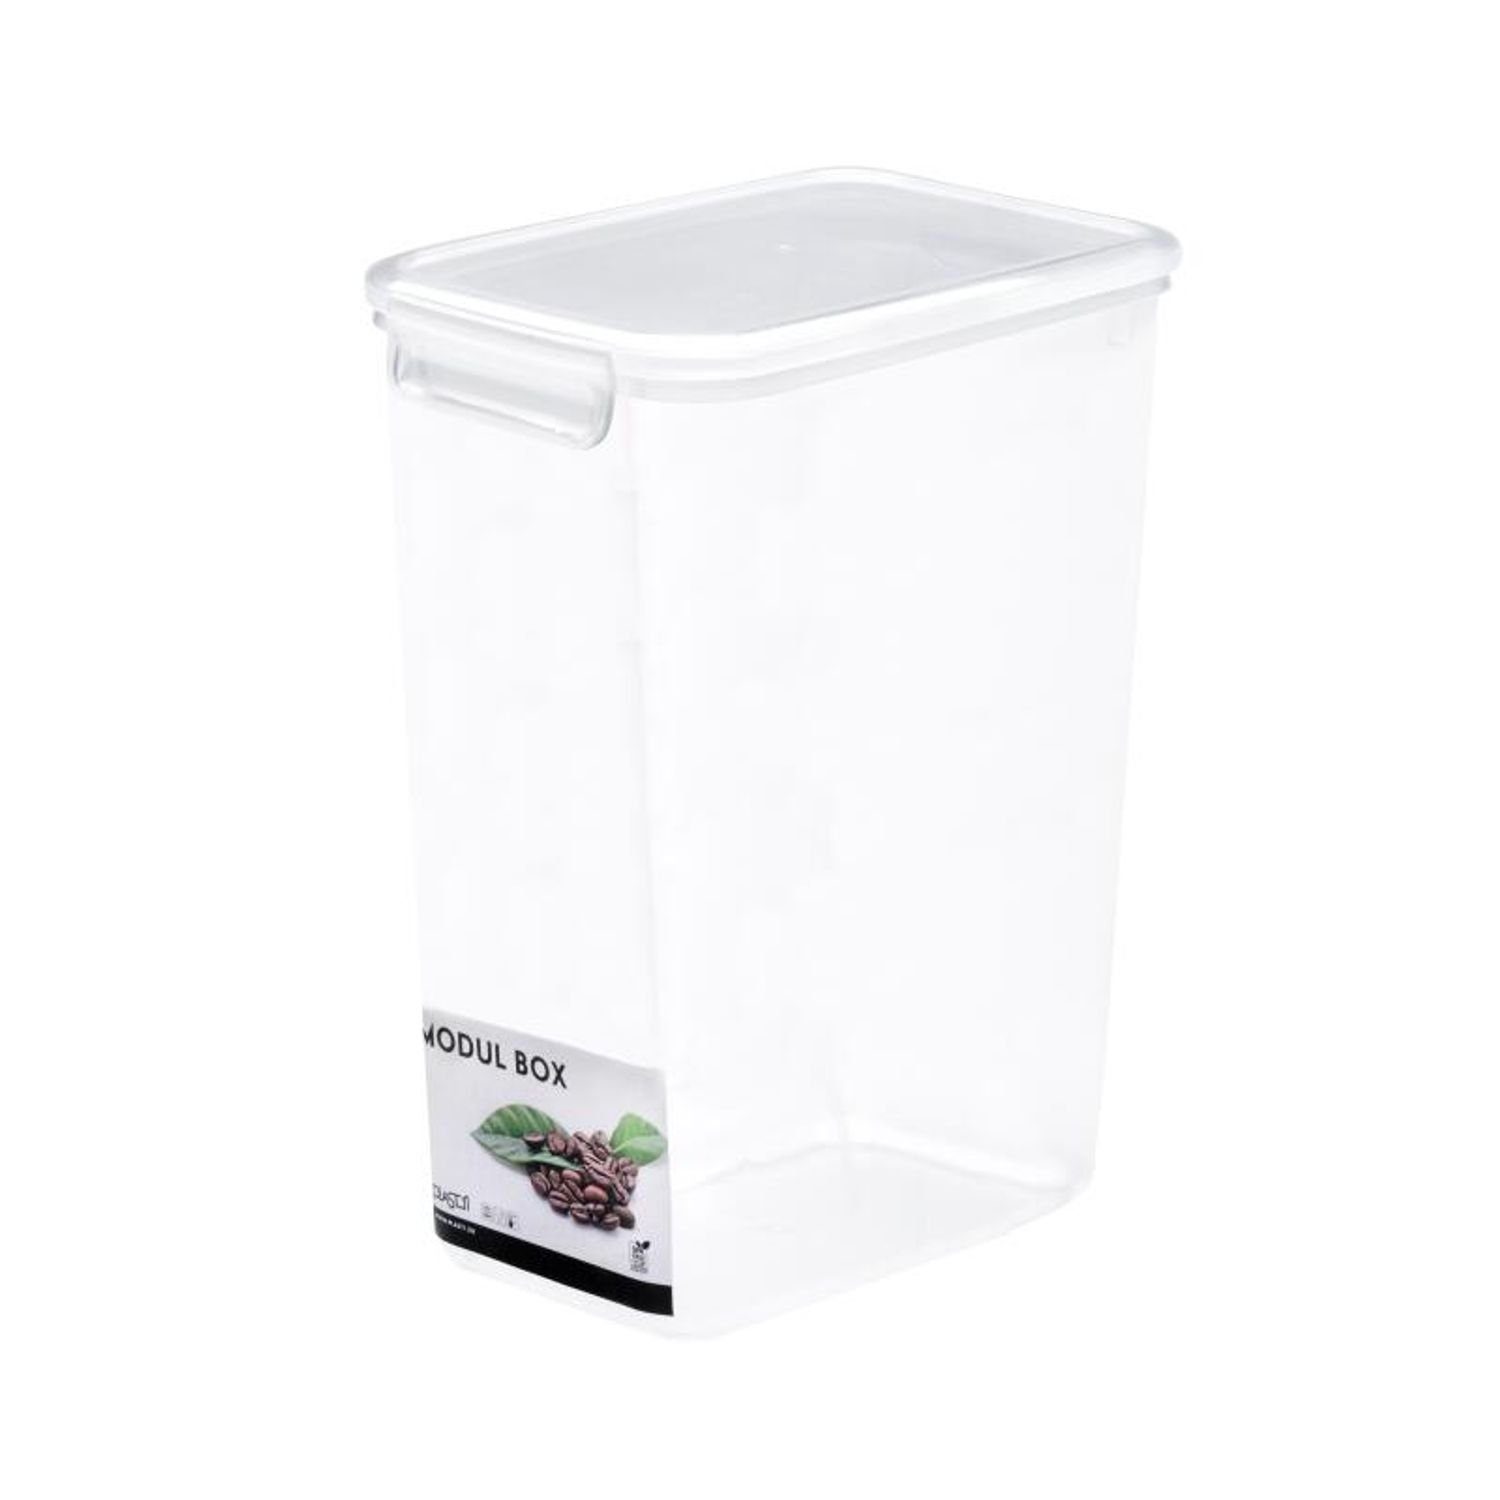 PLAST1 Boxen Kunststoff Frischhaltedosen Aufbewahrung Küche, 2,6L Behälter Vorratsbox Vorratsdose 10x